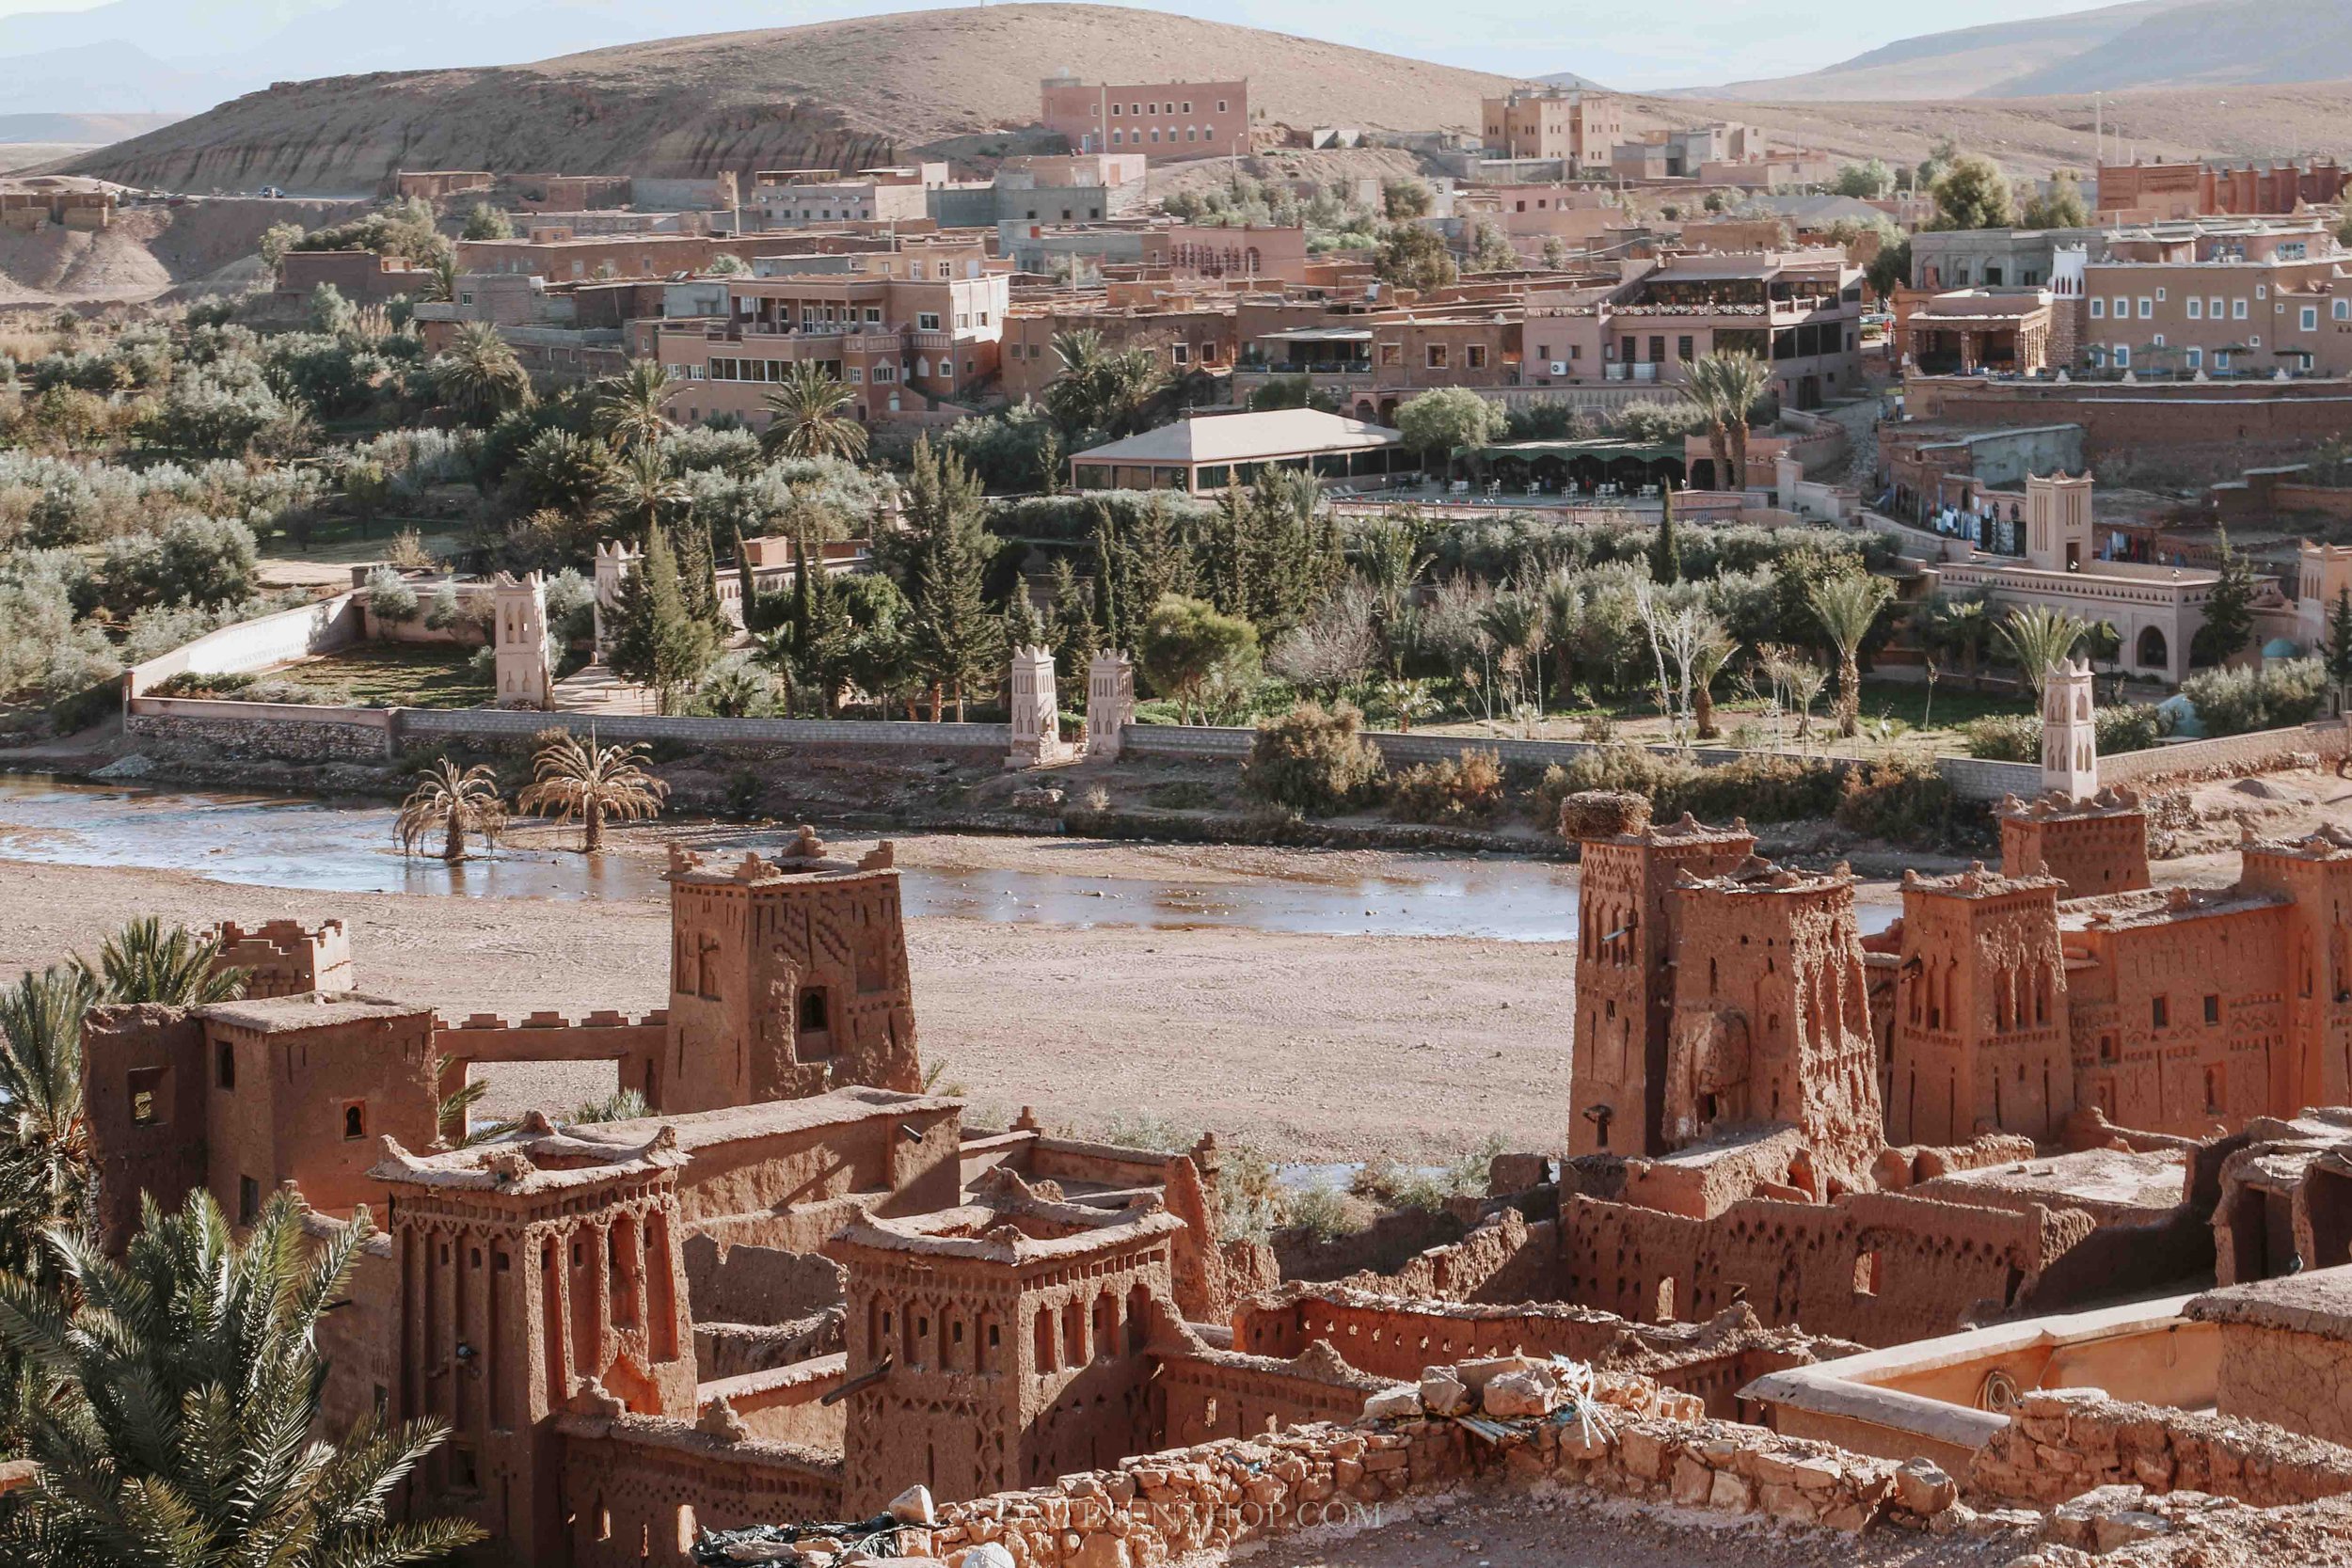 Ait ben haddou on a 3 Days Tour From Marrakech to Merzouga